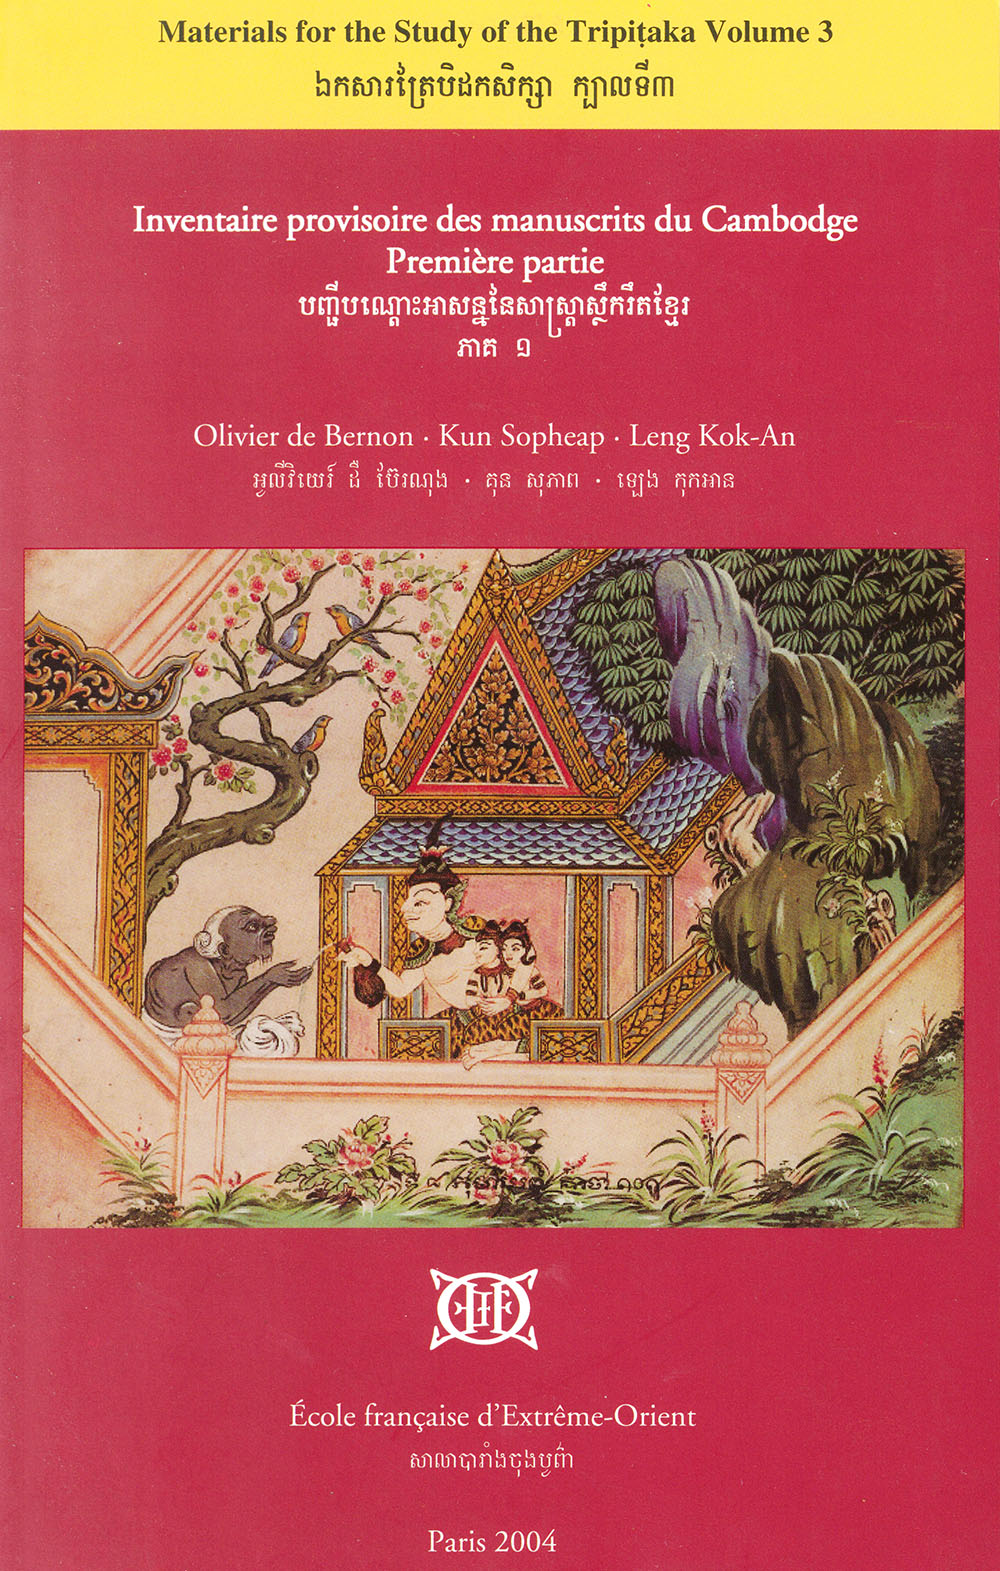 Inventaire provisoire des manuscrits du Cambodge. Première partie, Bibliothèques monastiques de Phnom Penh et de la province de Kandal